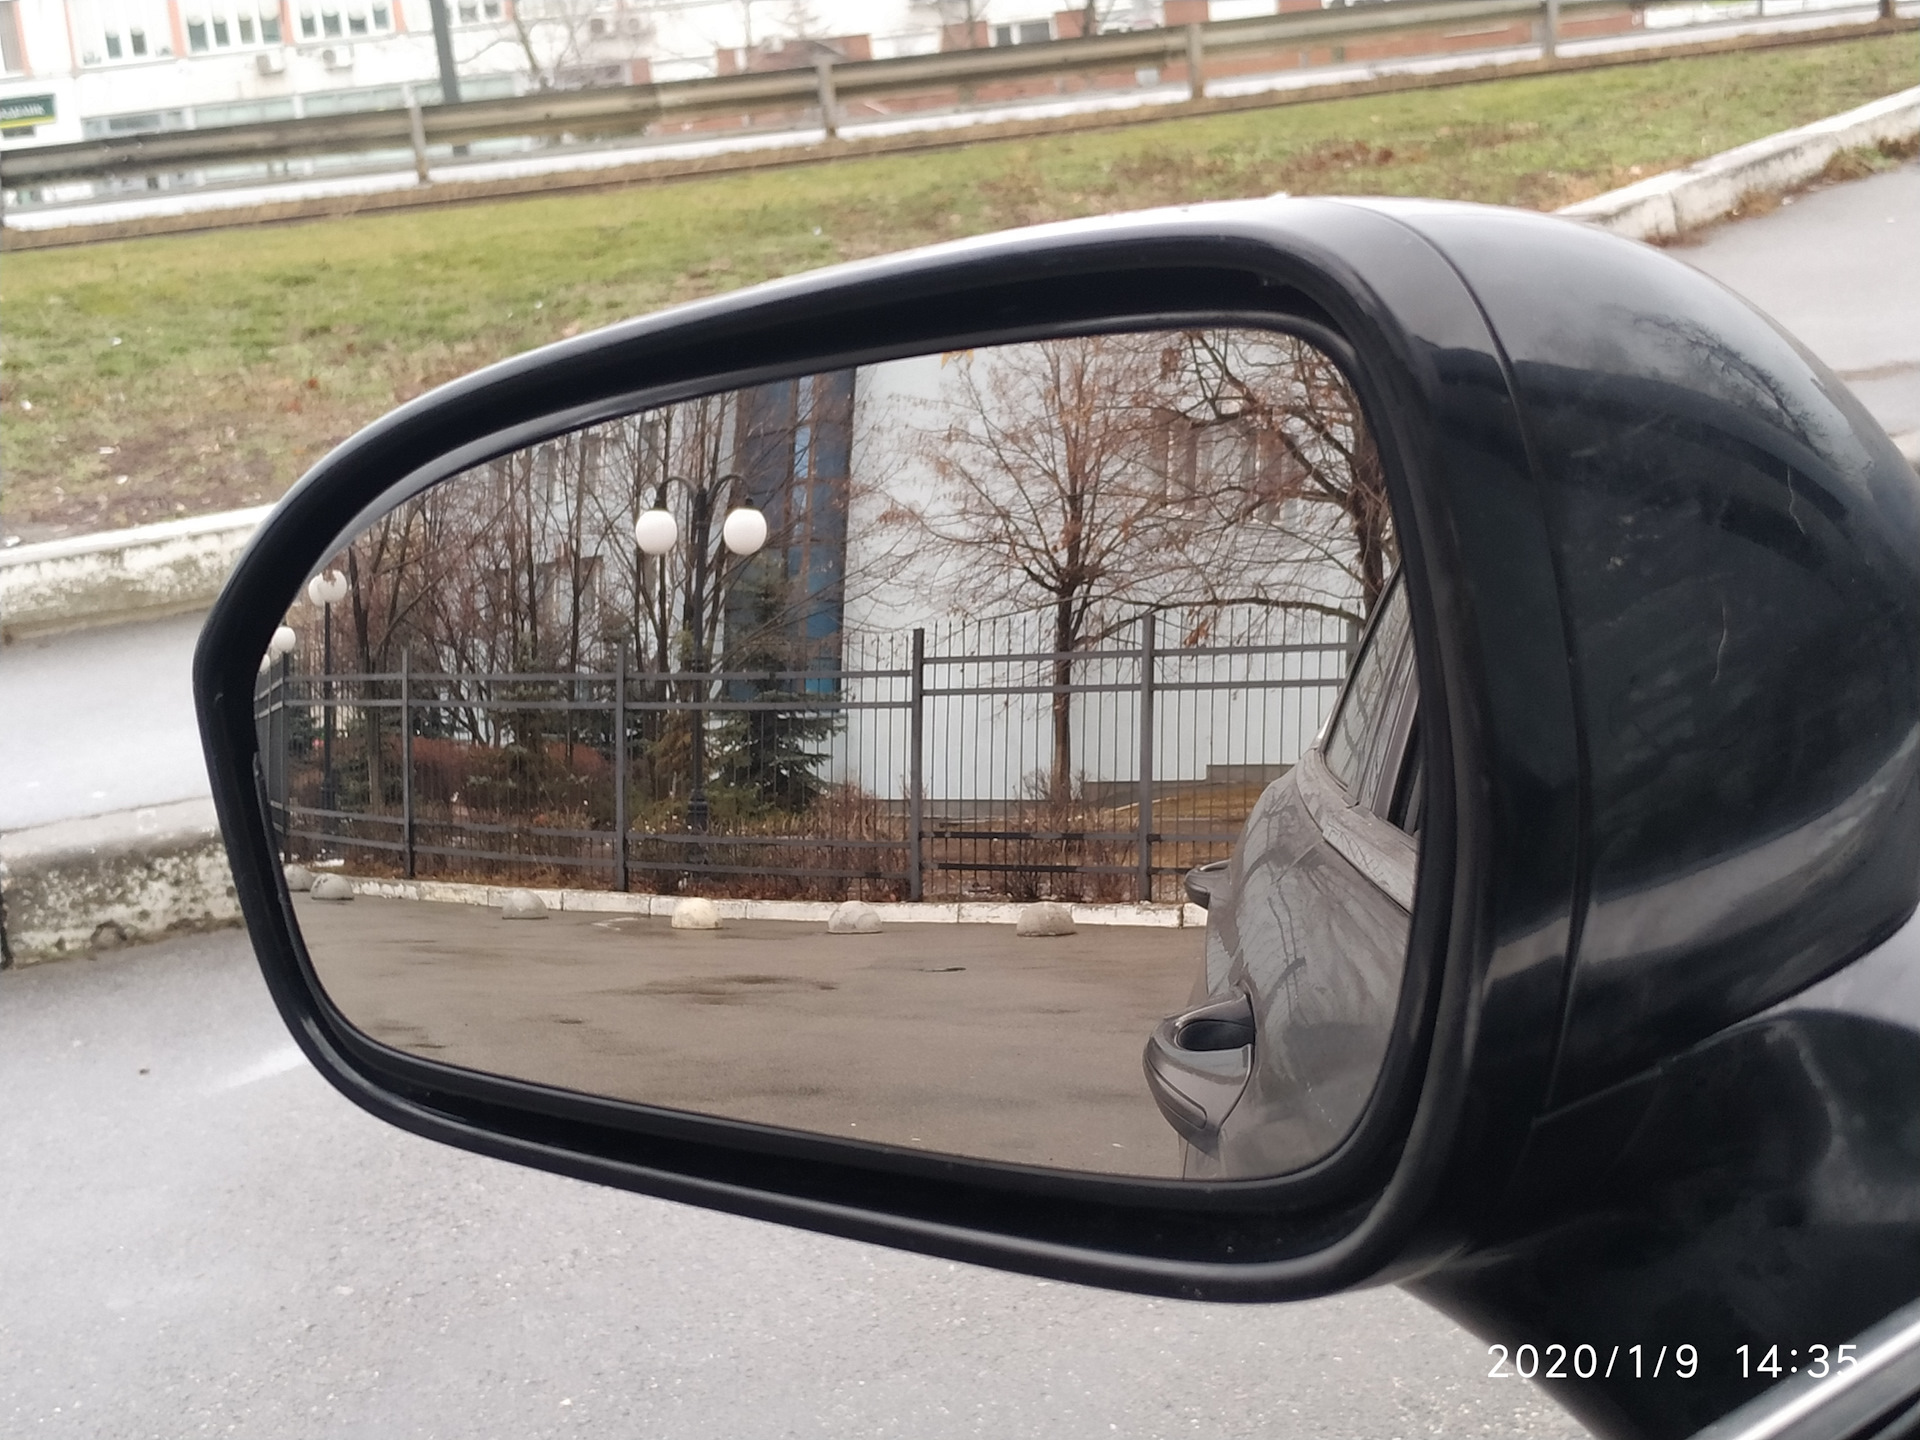 Оторванное водительское зеркало Exeed LX серый цвет. Как поменять зеркальный элемент на Форд Эскейп 2005.